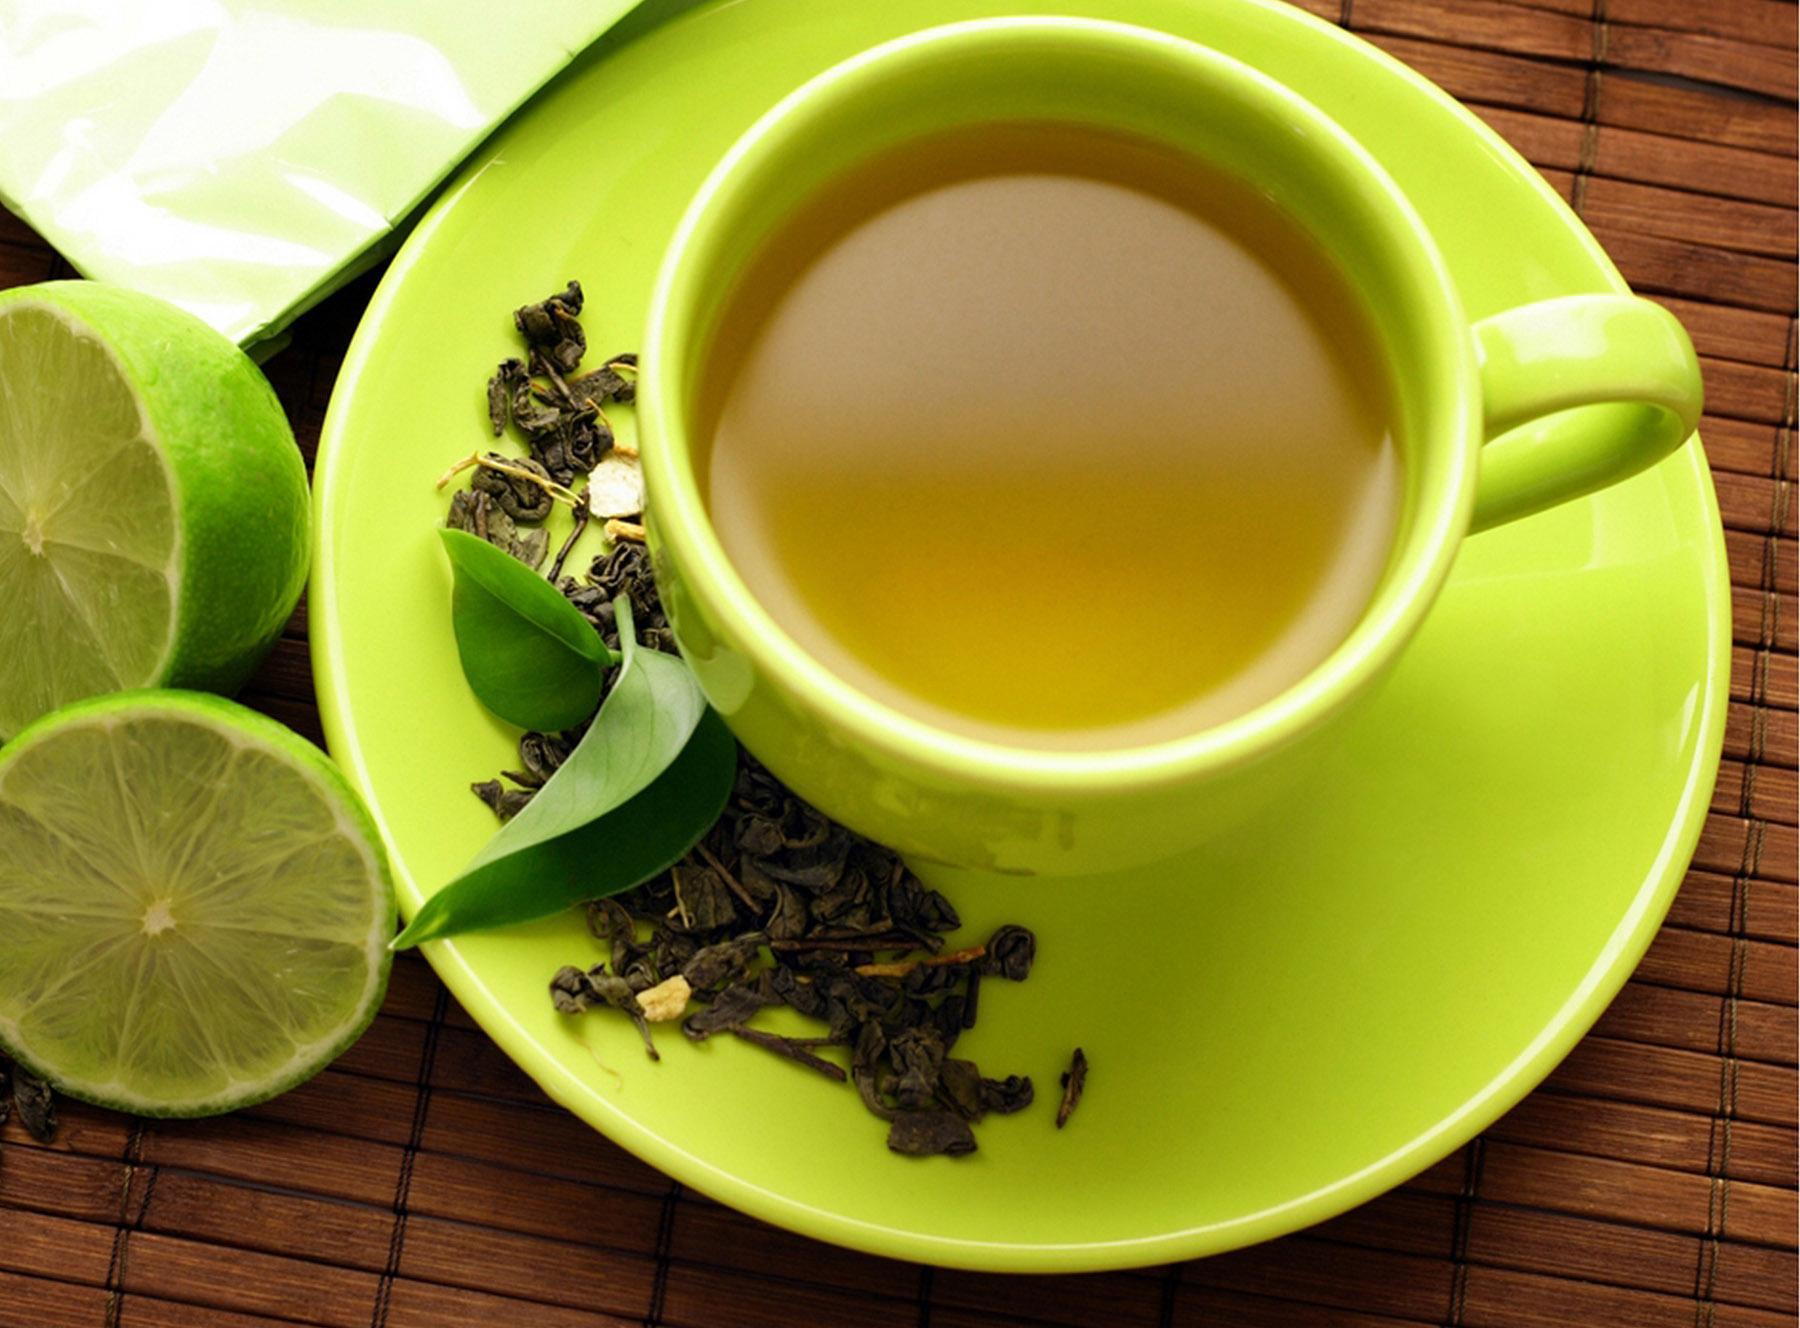 चाय पीना बन गया है सेहतमंद साबित हुआ स्टडी में